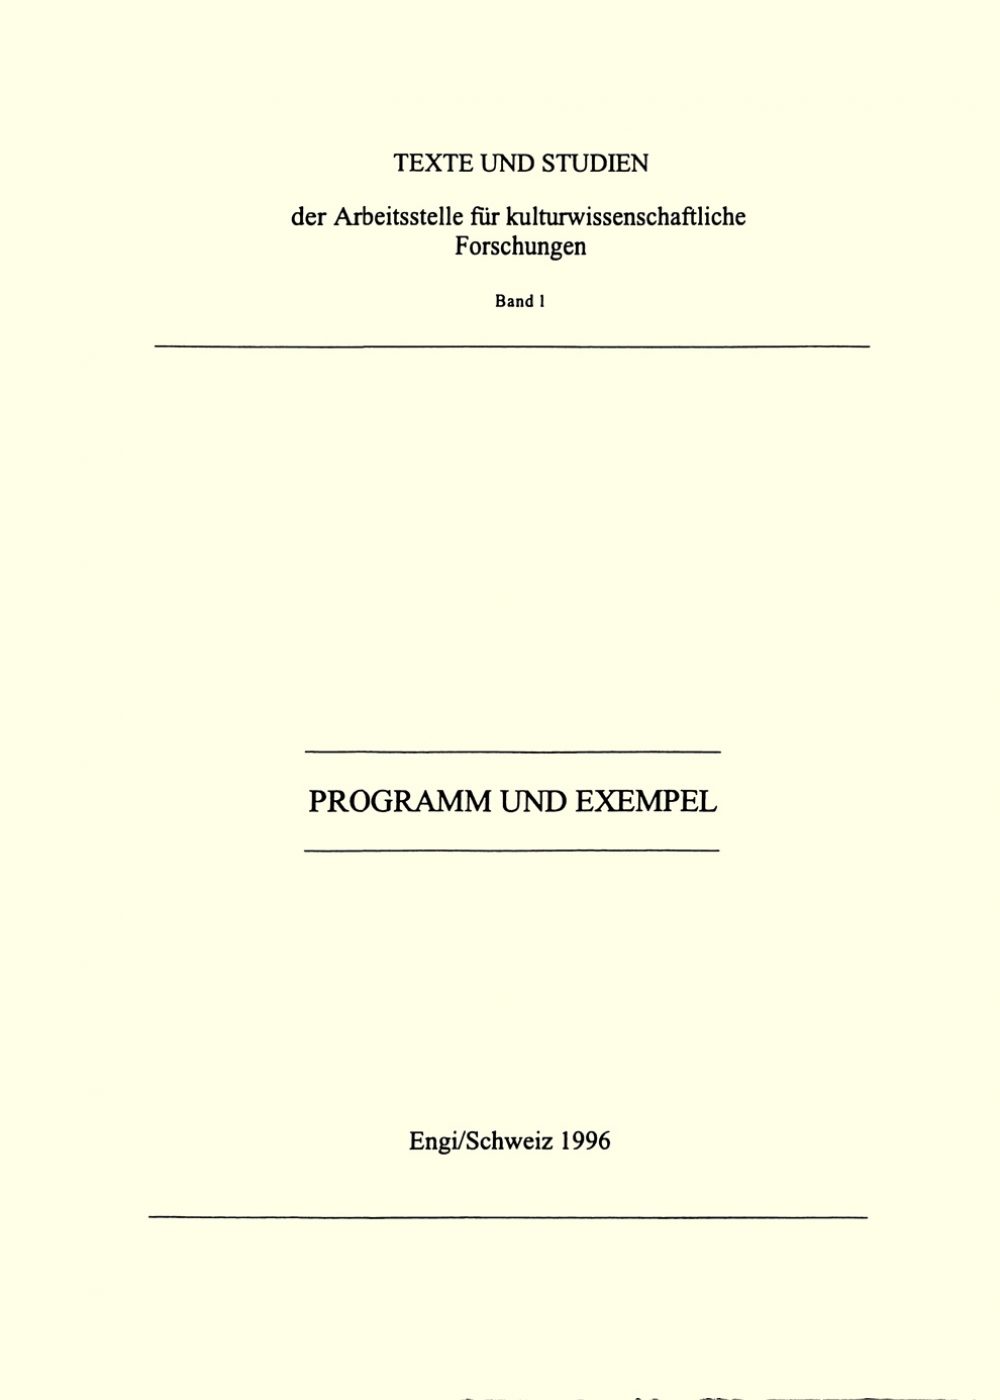 Texte und Studien, Band 1: Programm und Exempel